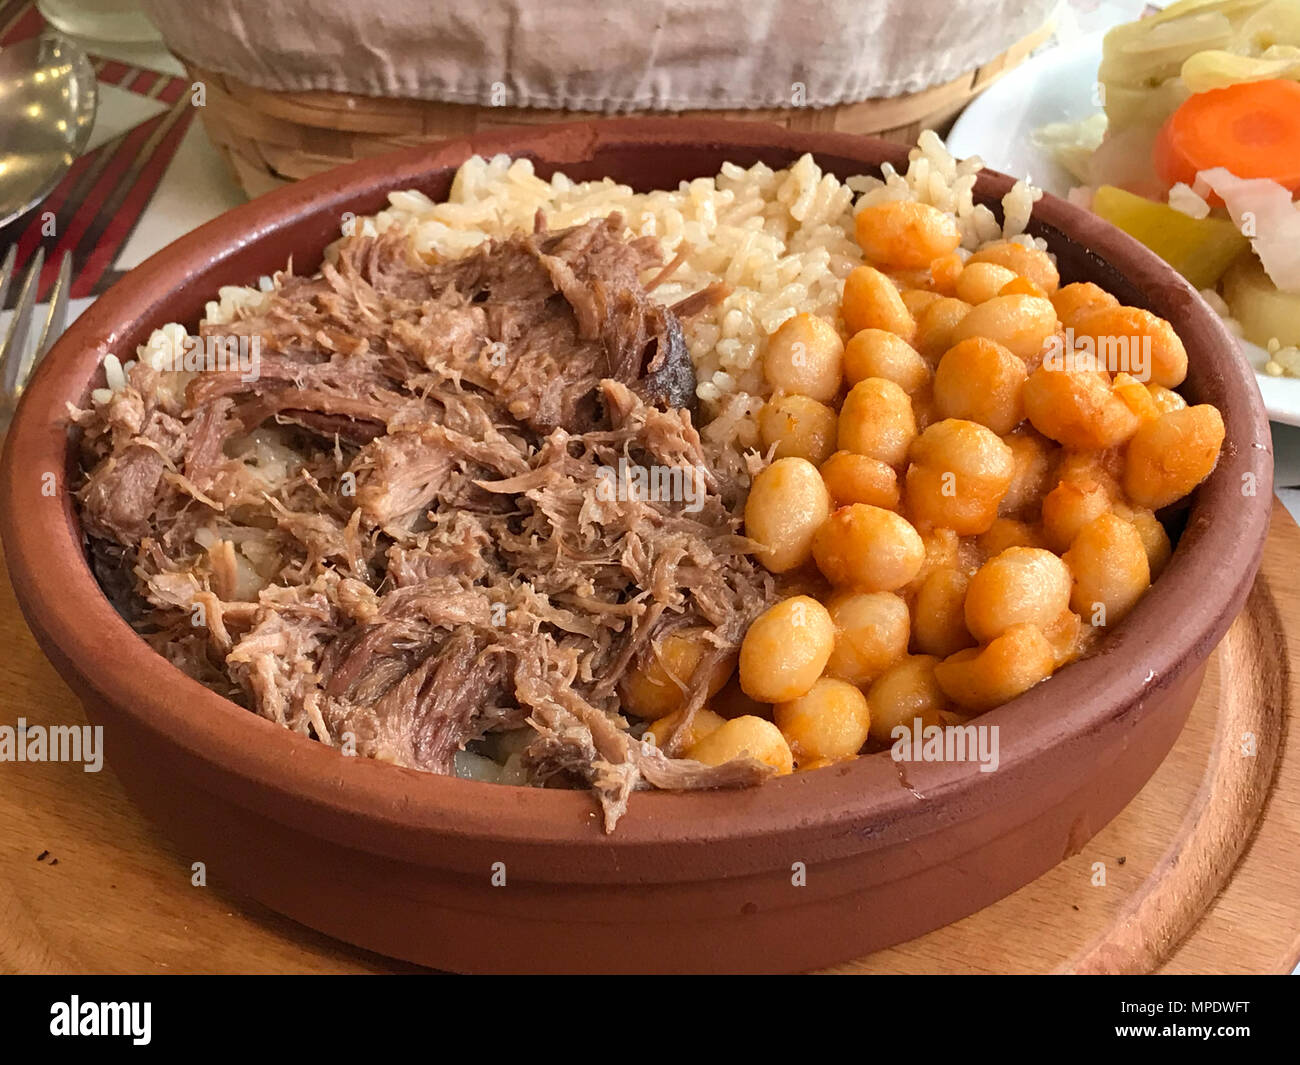 Türkische Pilav oder Pilav Reis mit Bohnen (Kuru fasulye) und Kavurma  (geschmortes Fleisch). Street Food Stockfotografie - Alamy